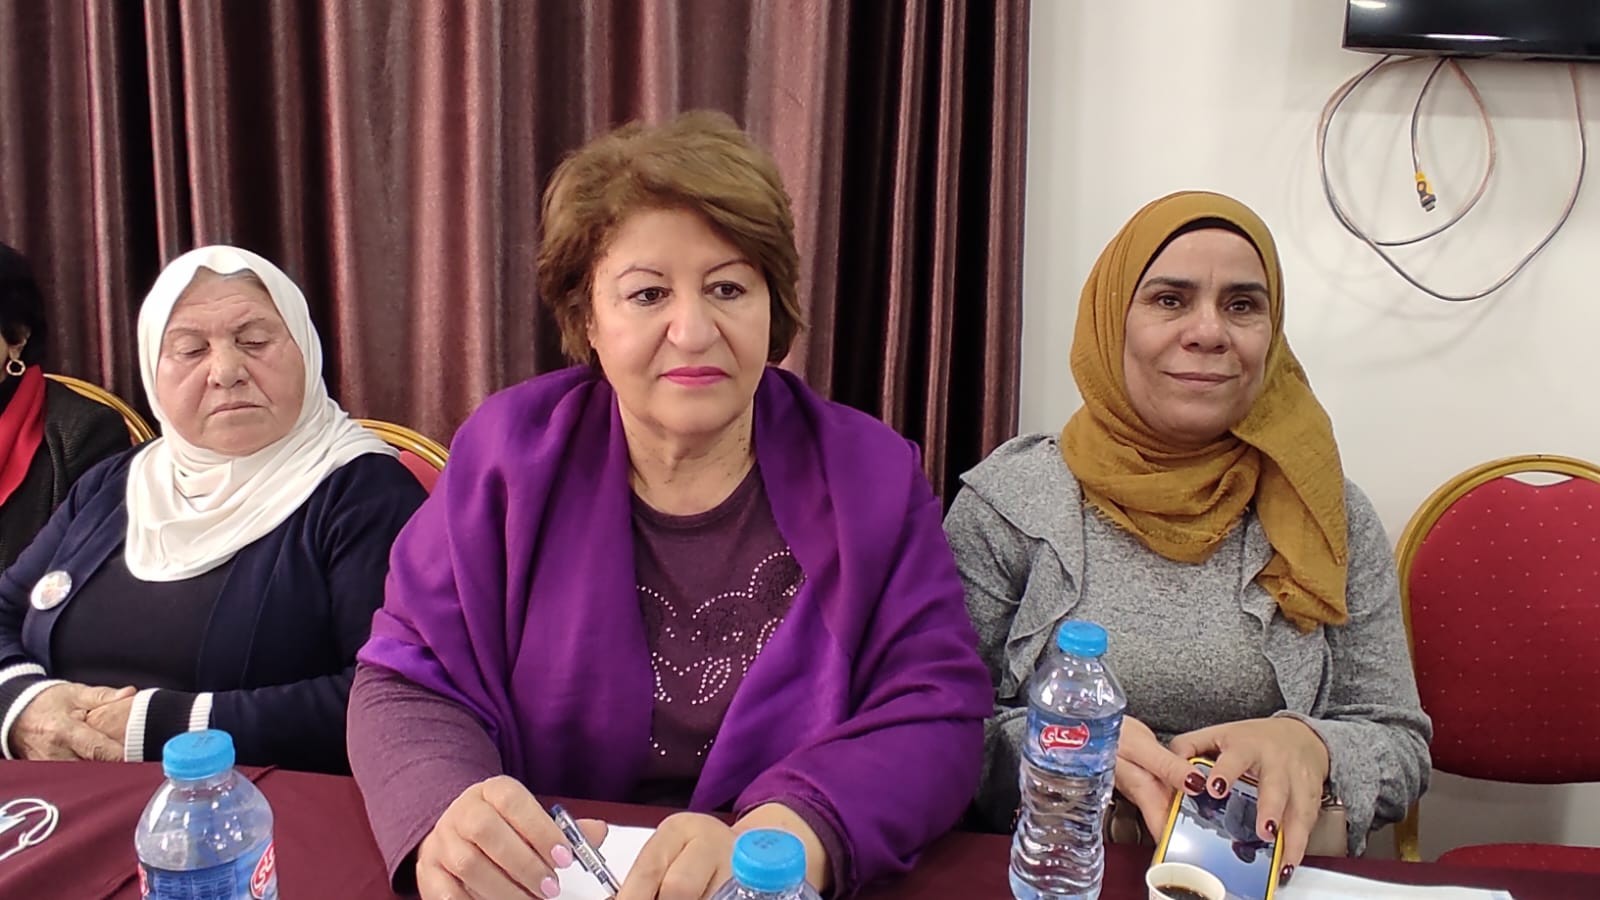 الاتحاد العام للمرأة الفلسطينية في المحافظات الجنوبية وفي الضفة الغربية يلتقيان في سلسلة اجتماعات في قطاع غزة 8.jpg